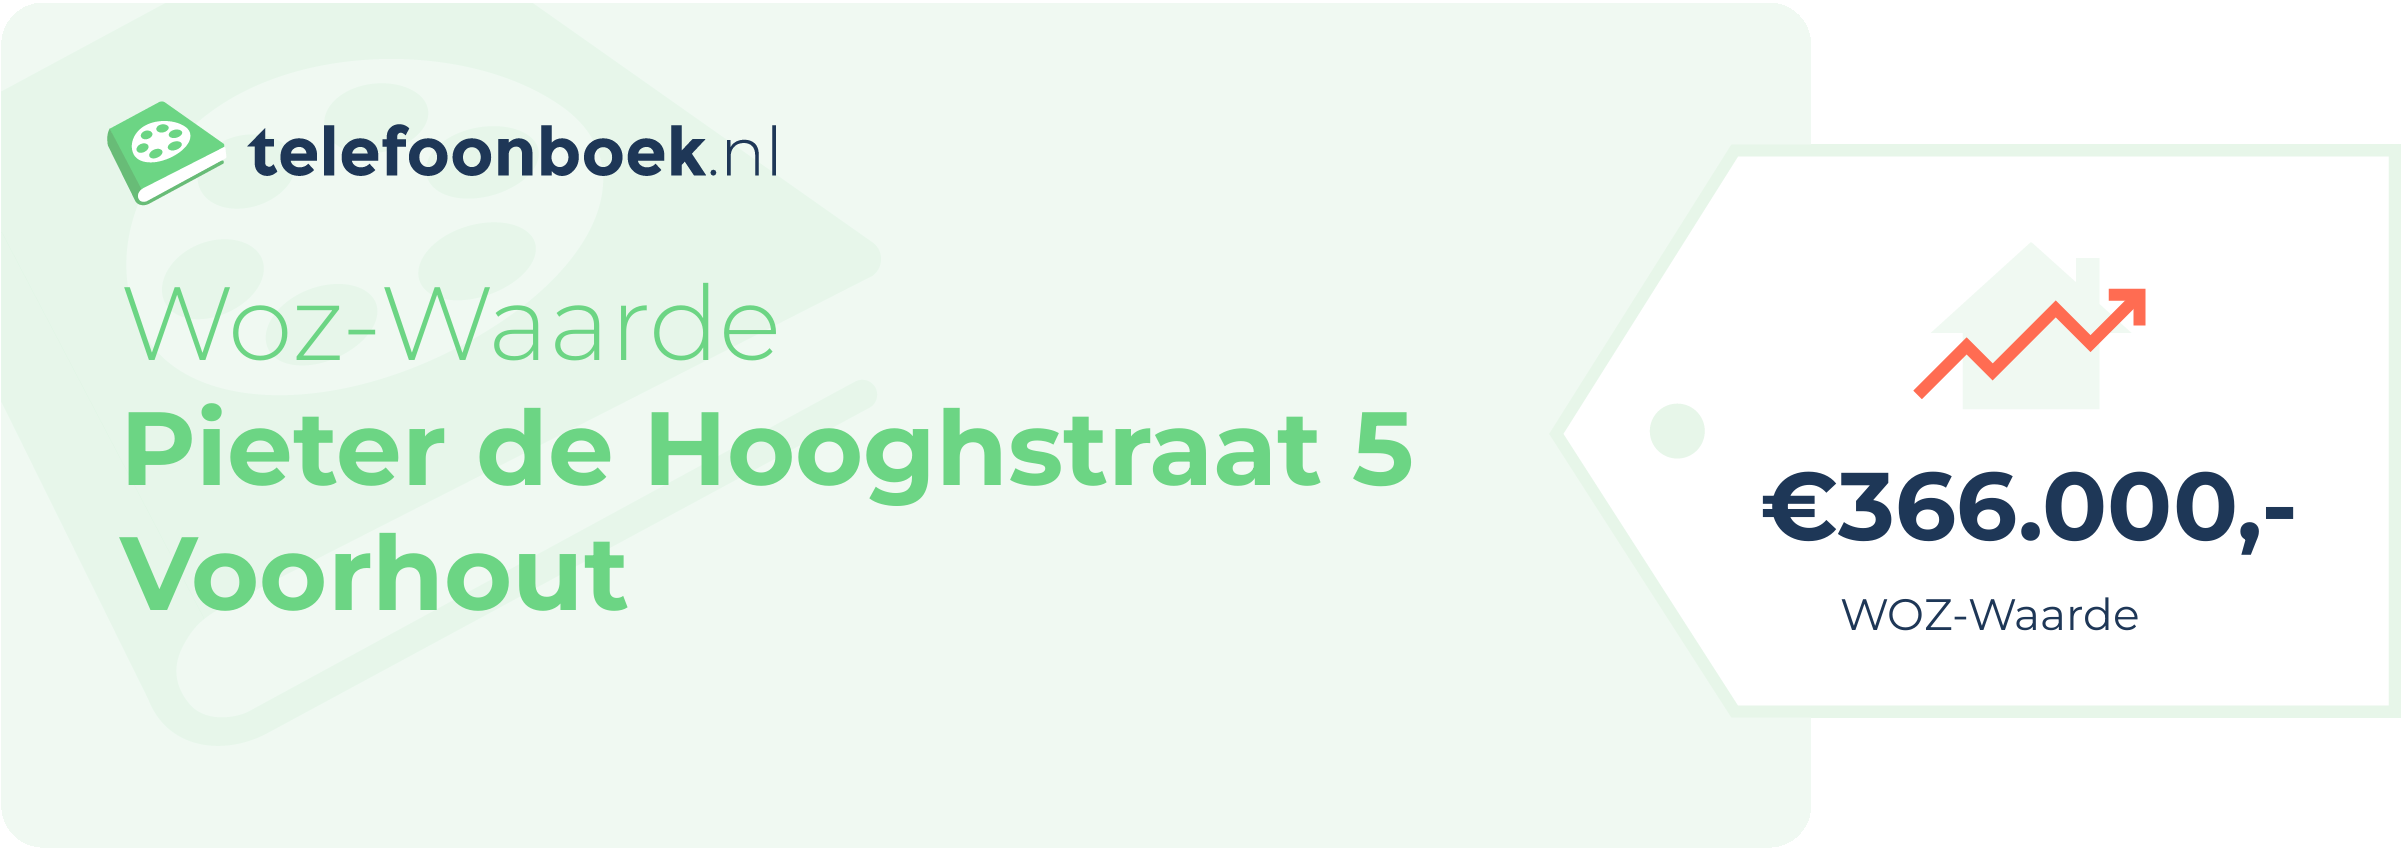 WOZ-waarde Pieter De Hooghstraat 5 Voorhout